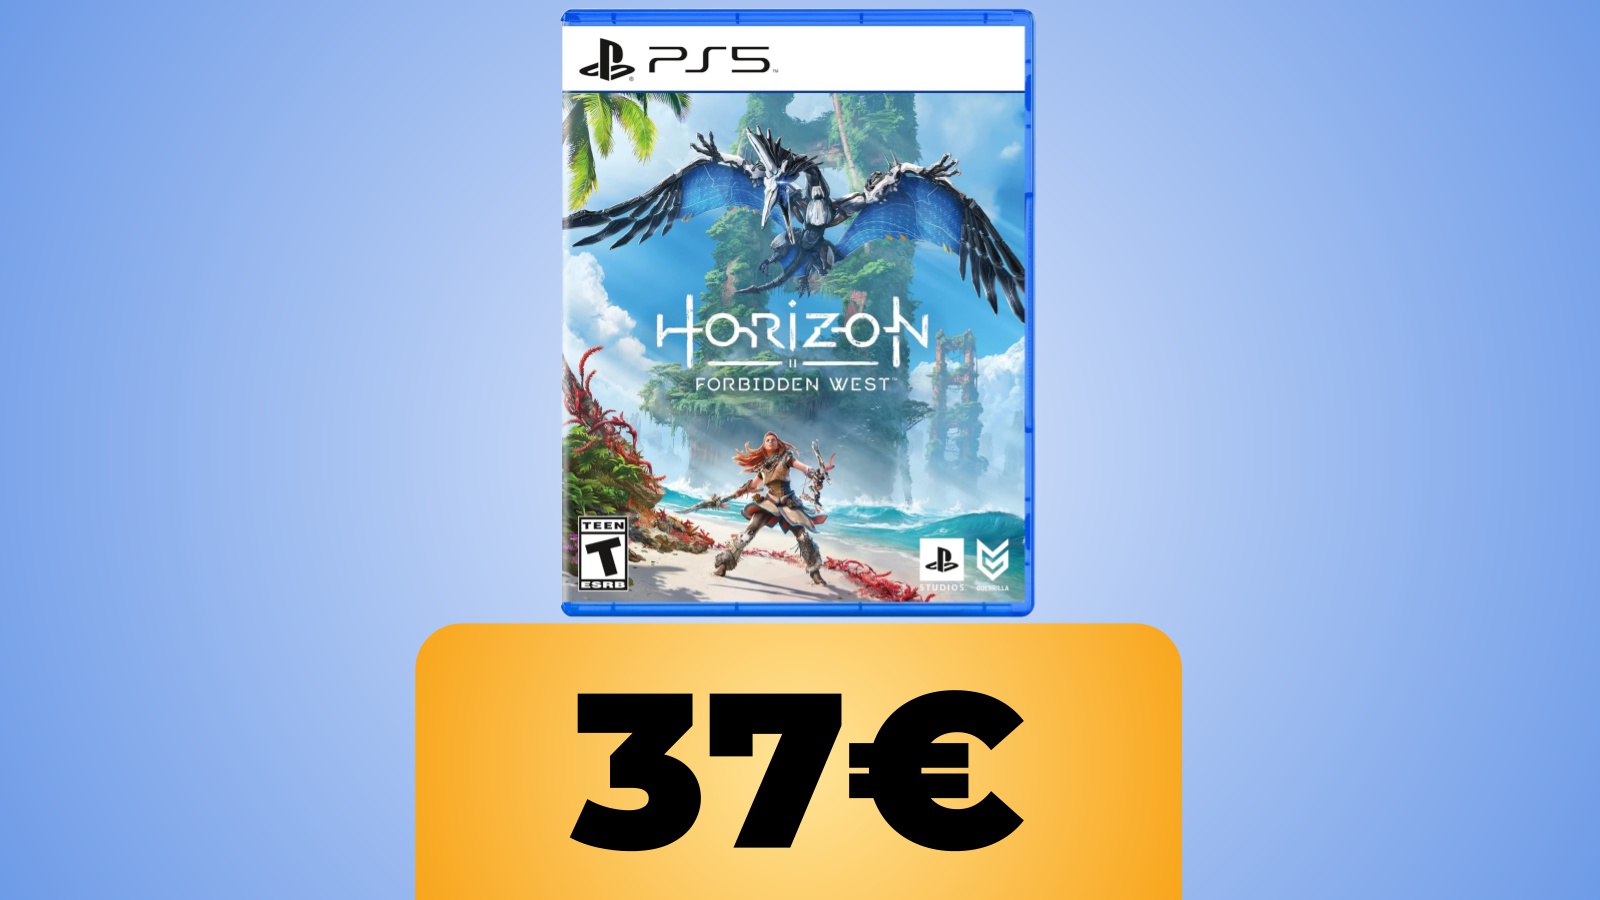 Horizon Forbidden West per PS5 è in sconto al prezzo minimo storico su Amazon